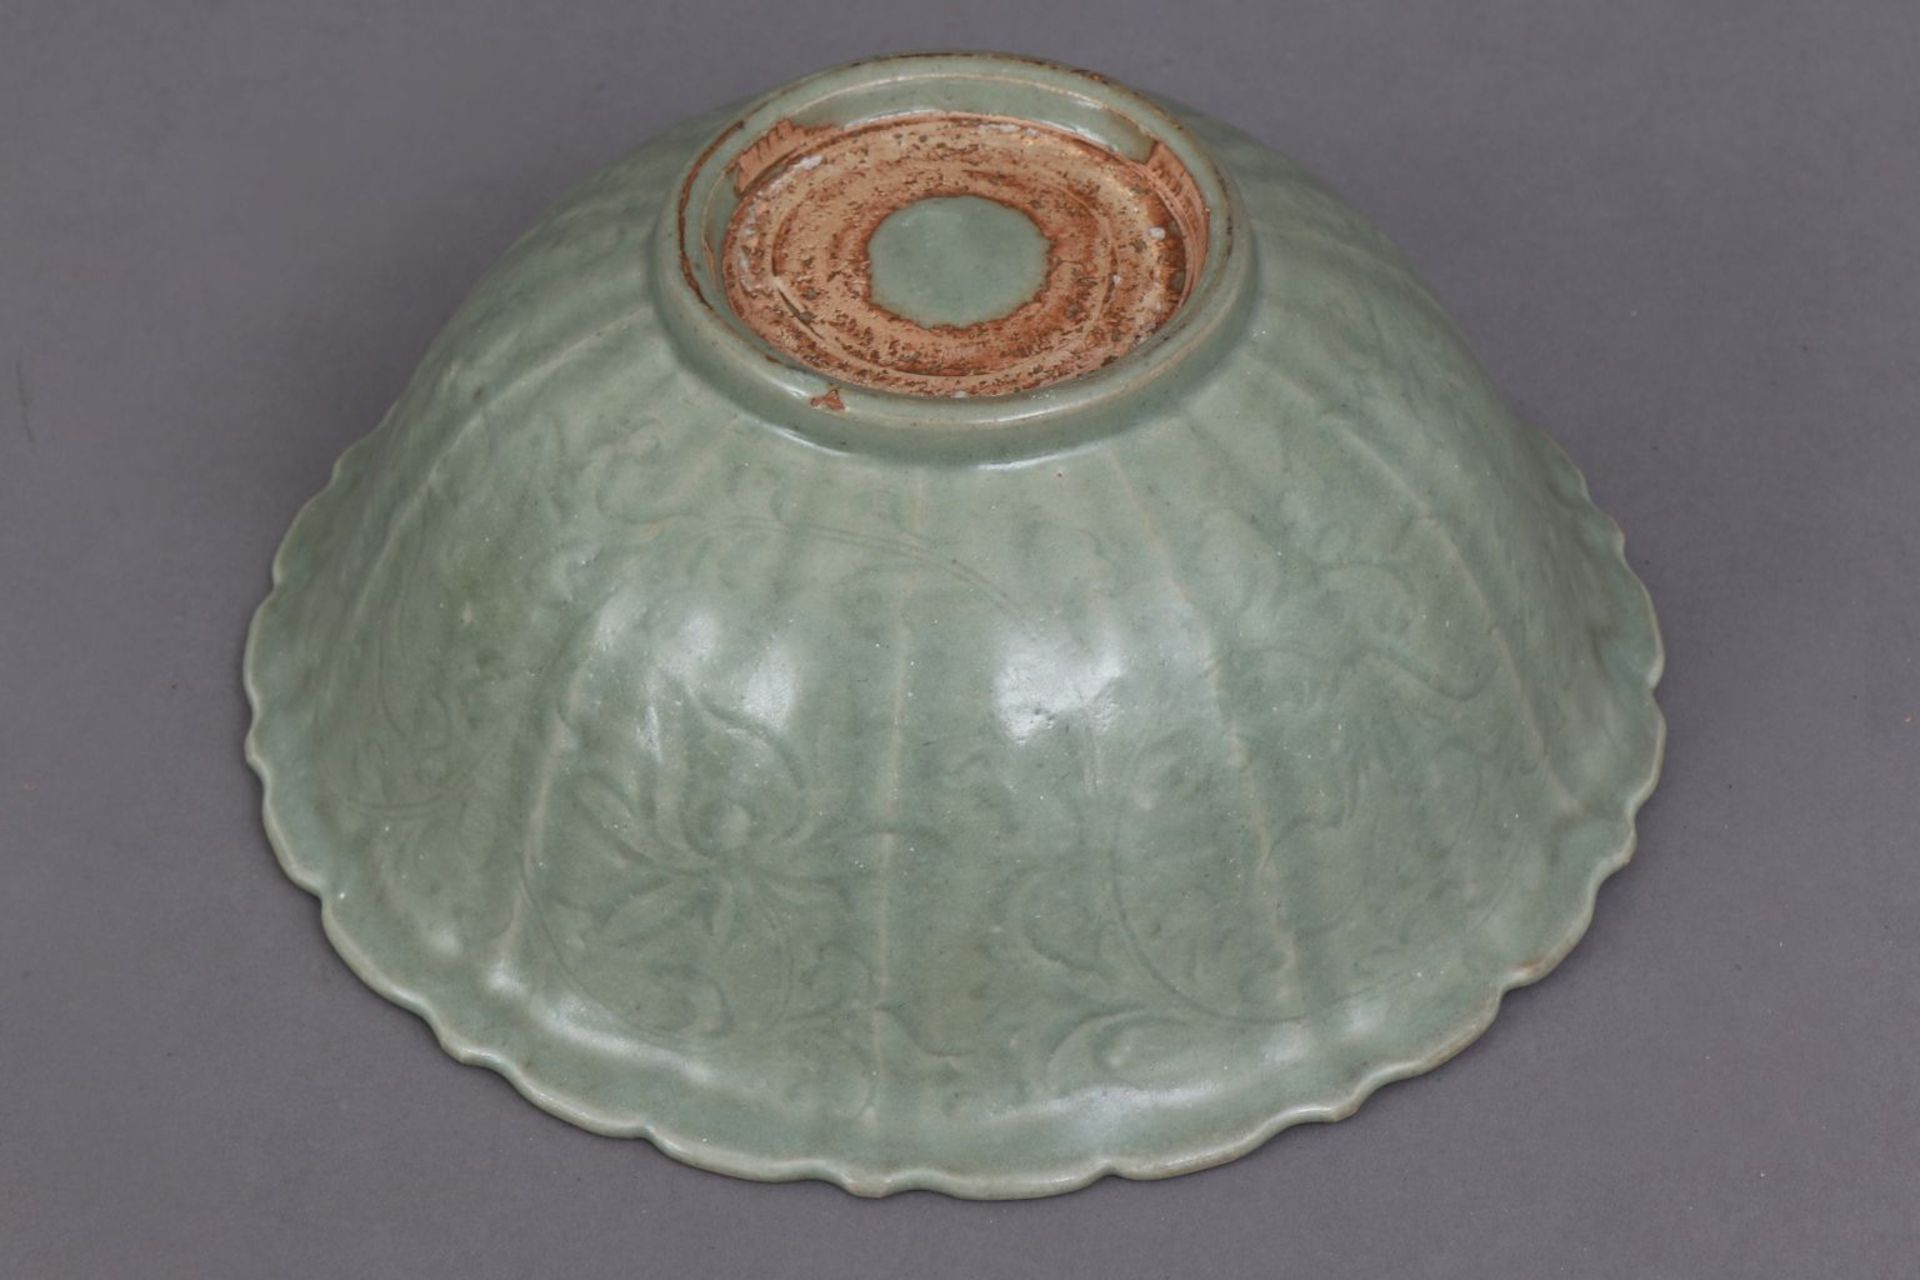 Chinesische Porzellan Seladonschale Alter unbestimmt, runde, tiefe Schale mit gerippter Wandung - Bild 2 aus 2